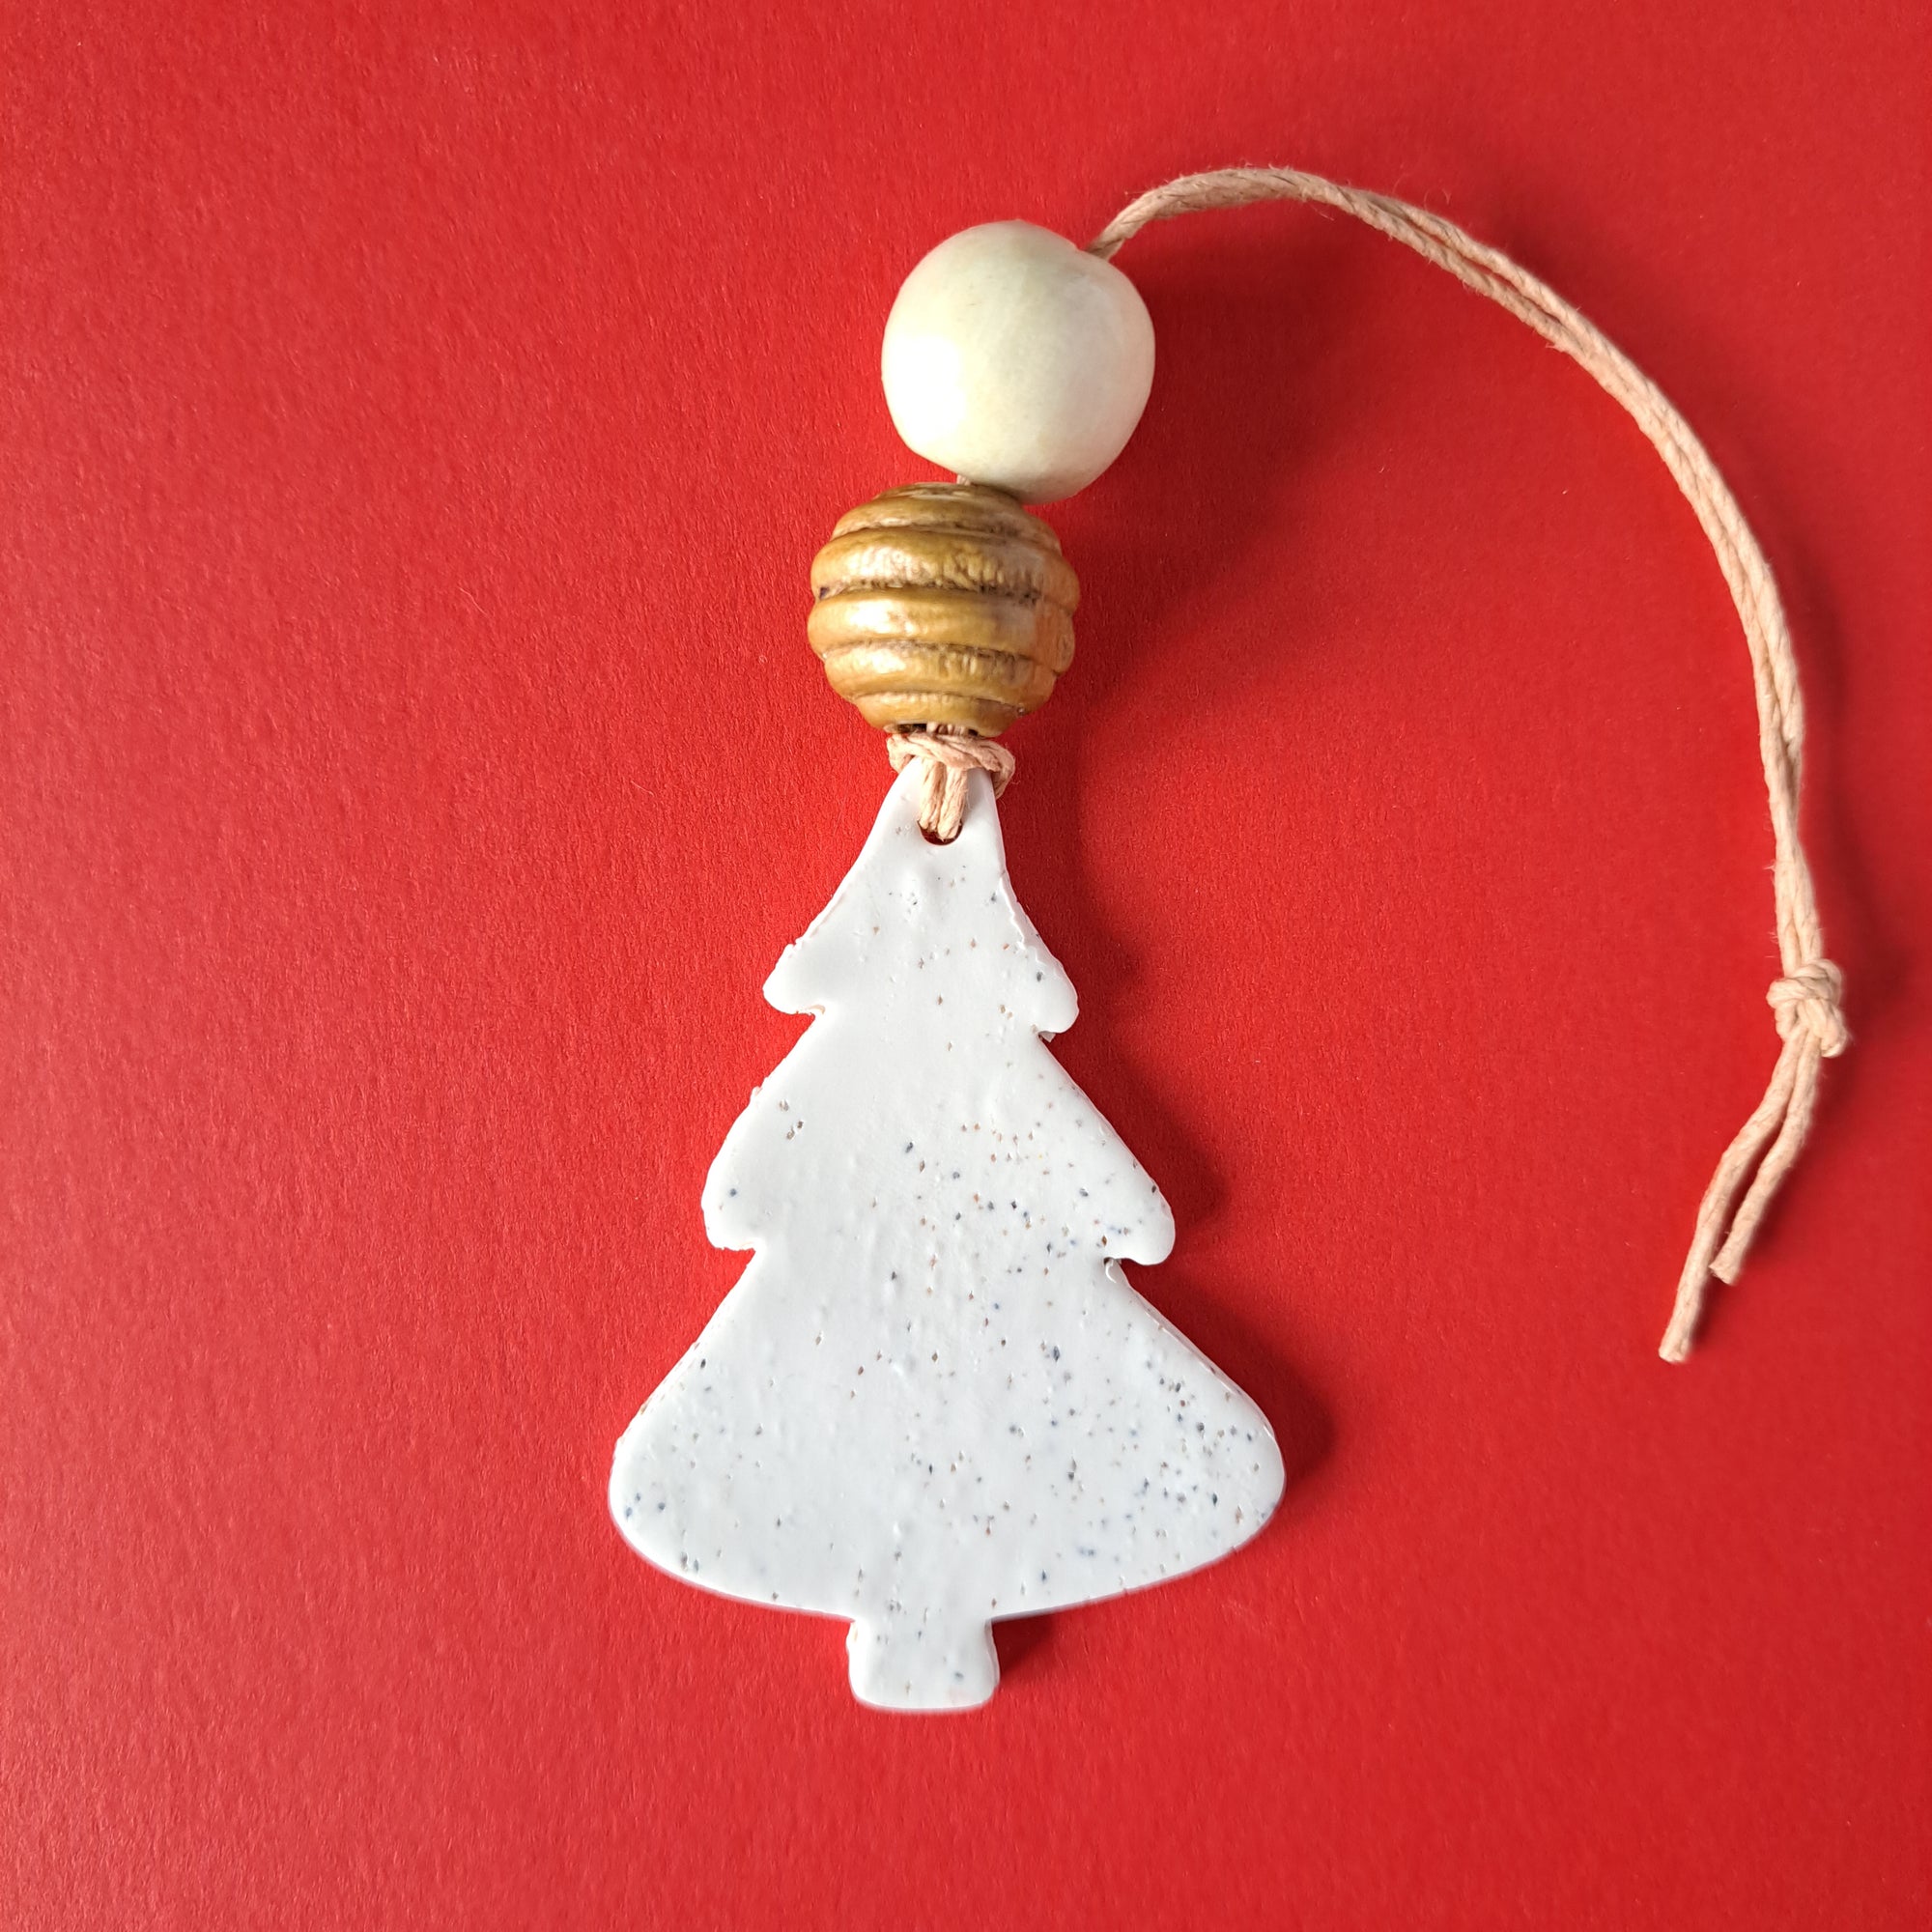 Handmade Minimalist Christmas Tree Ornament